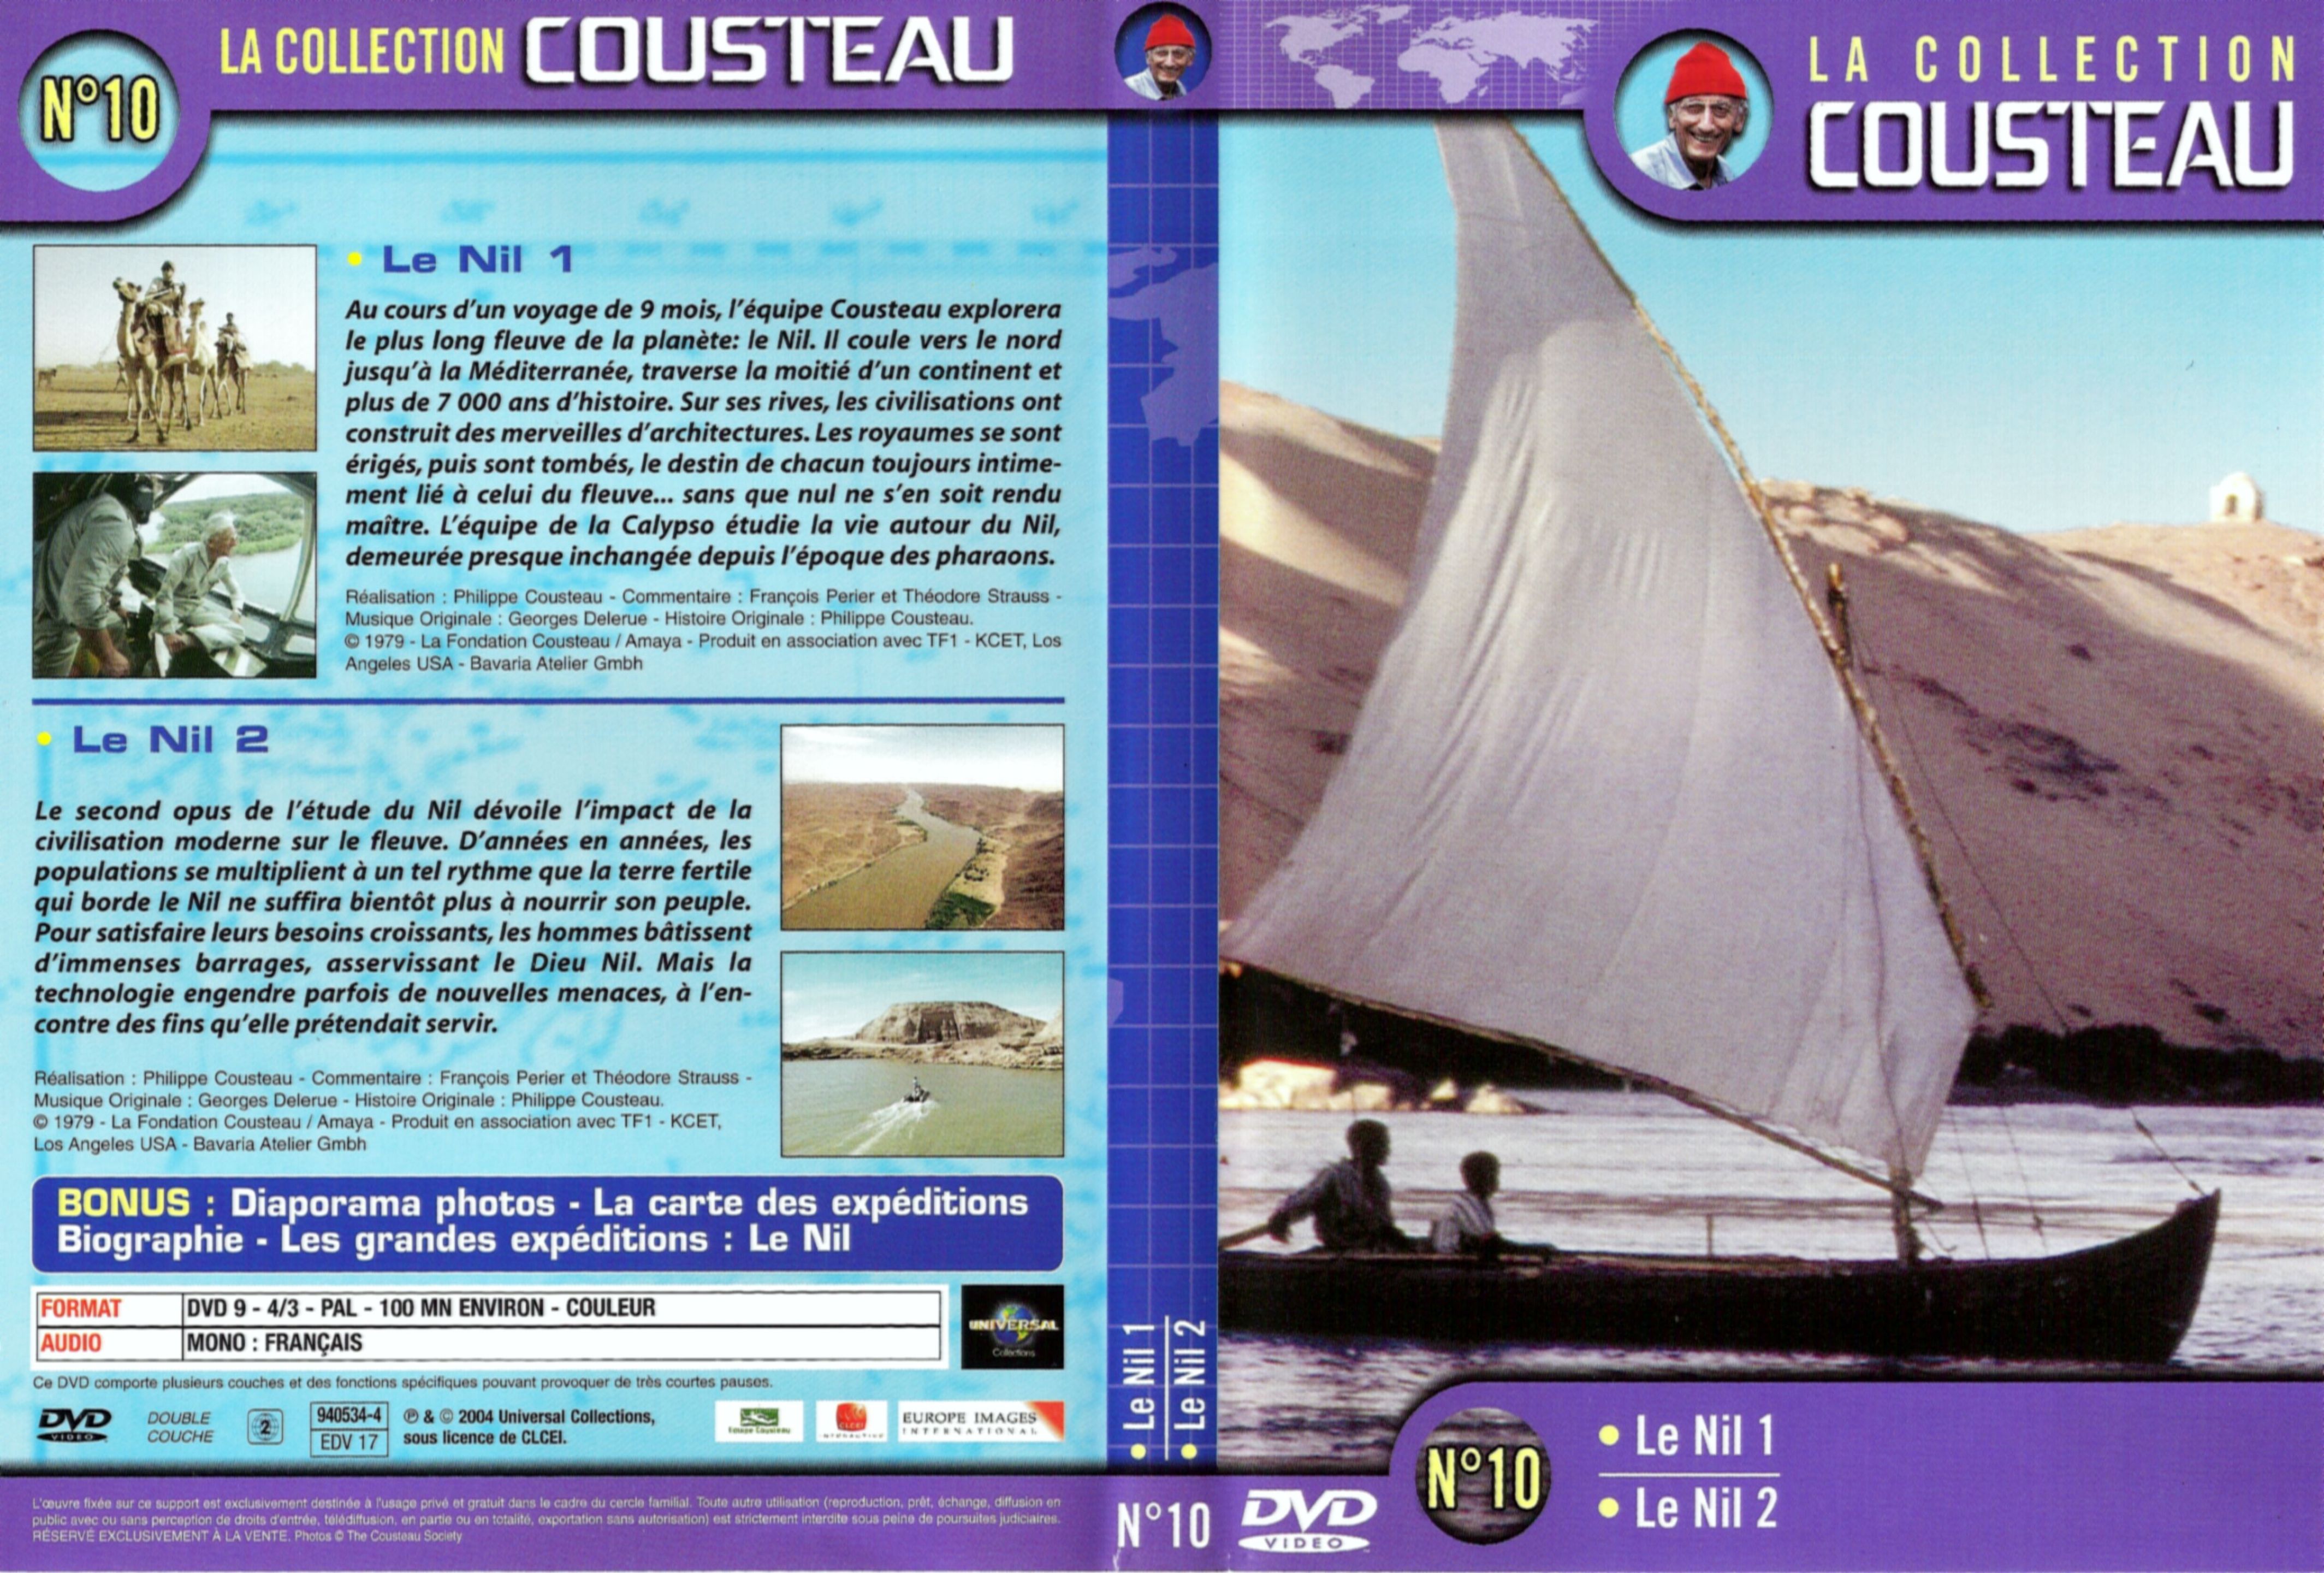 Jaquette DVD Cousteau Collection vol 10